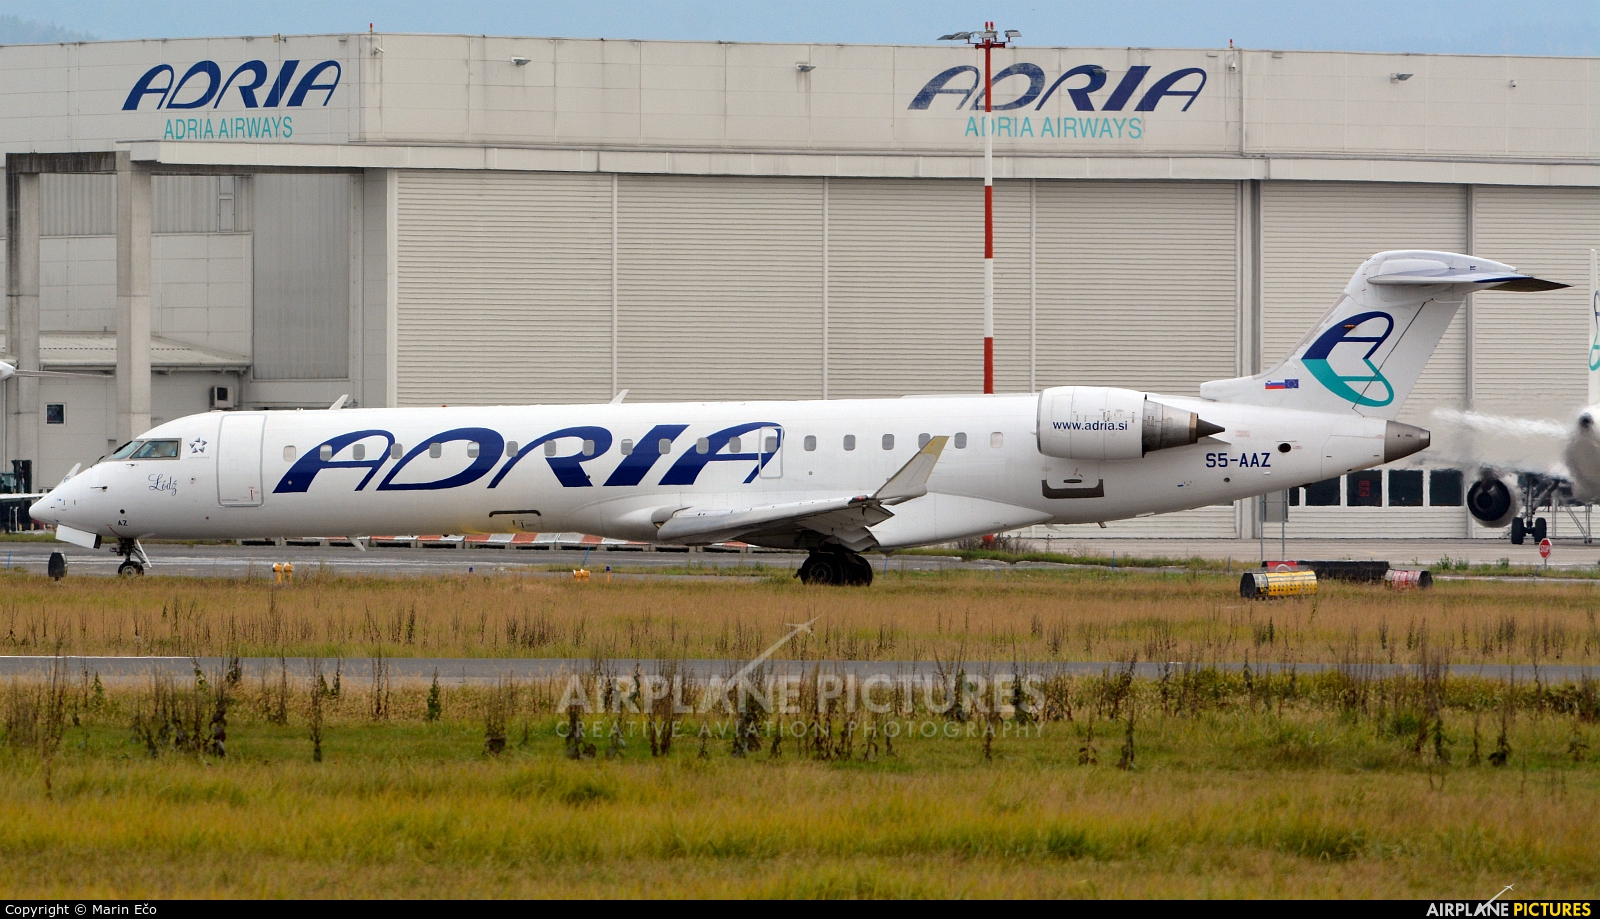 Adria Airways S5-AAZ aircraft at Ljubljana - Brnik